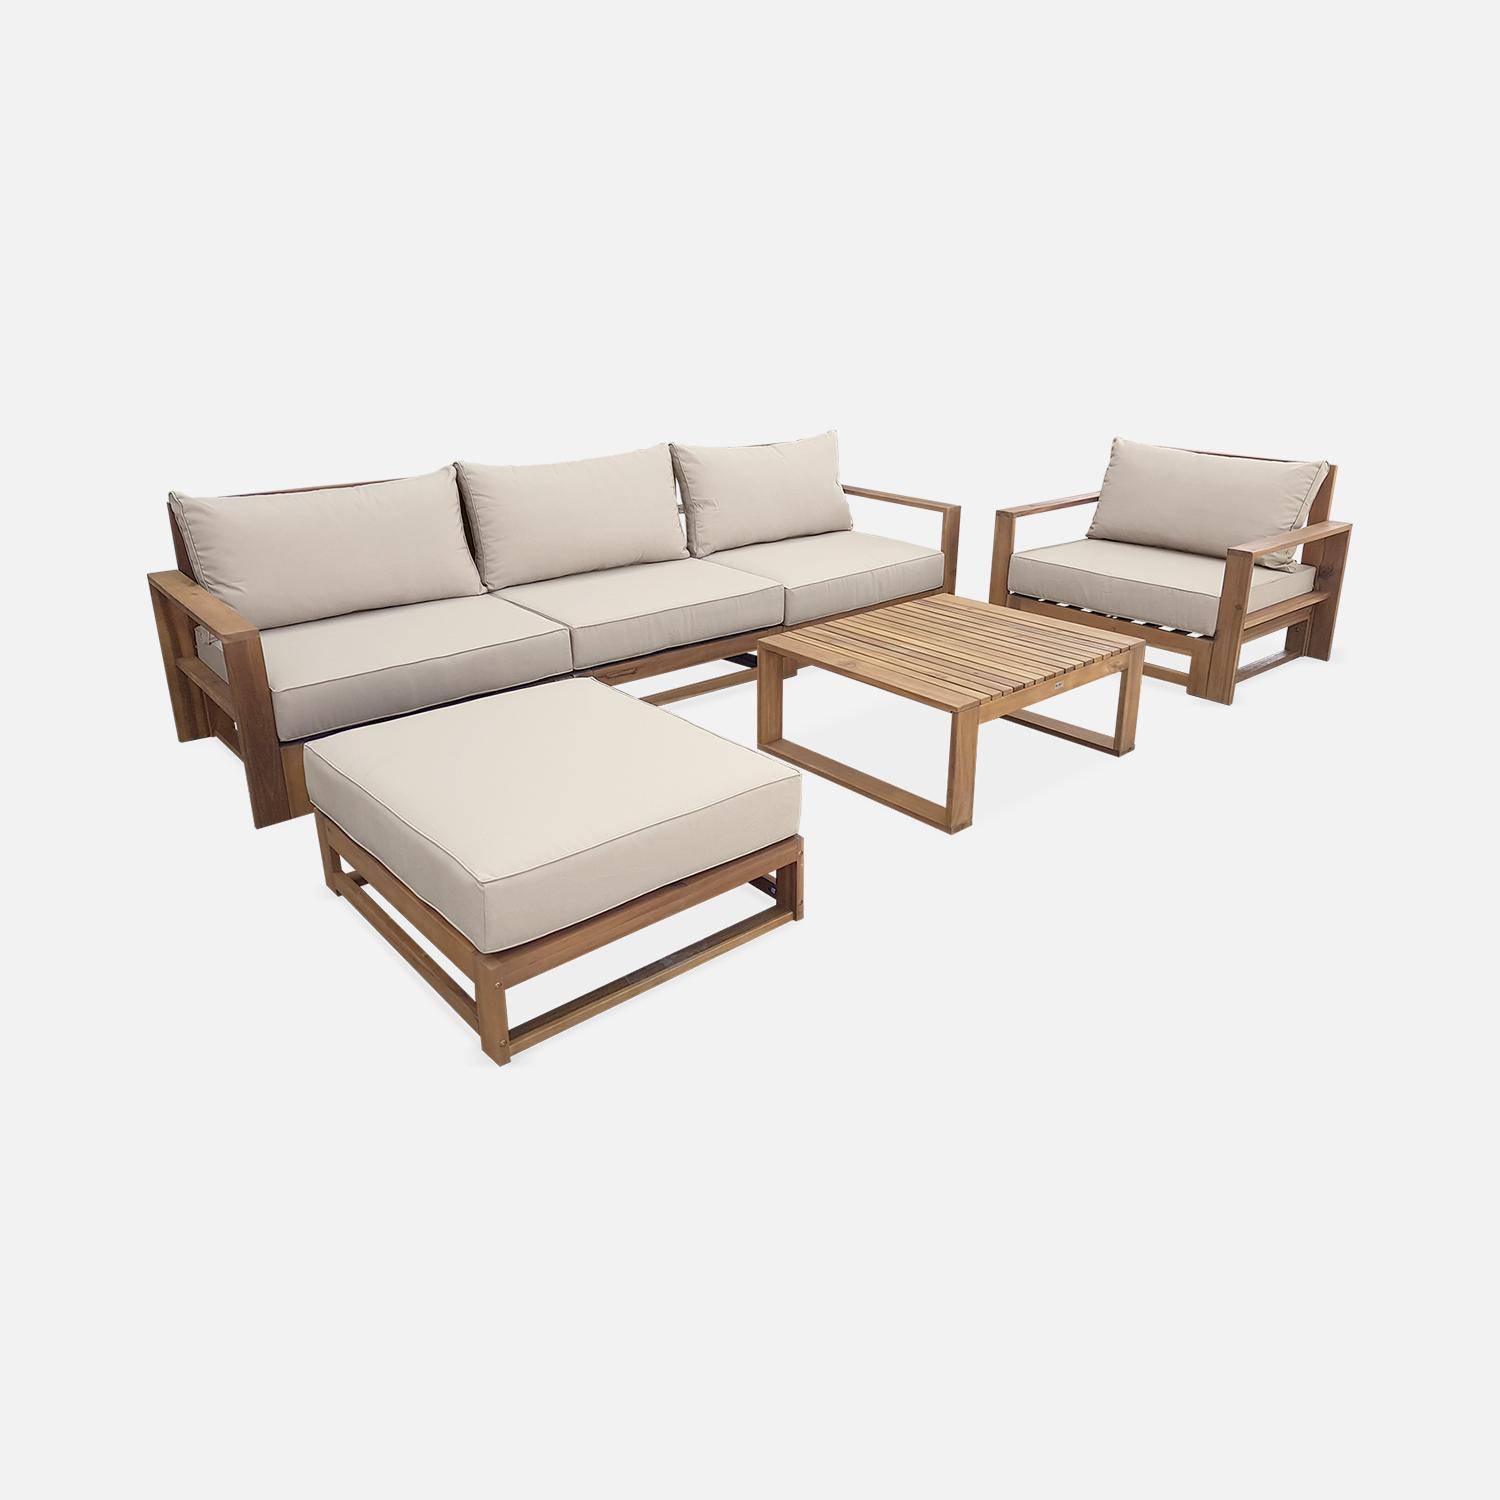 Salon de jardin en bois 5 places - Mendoza - Coussins beiges, canapé, fauteuils et table basse en acacia, 6 éléments modulables, design Photo3